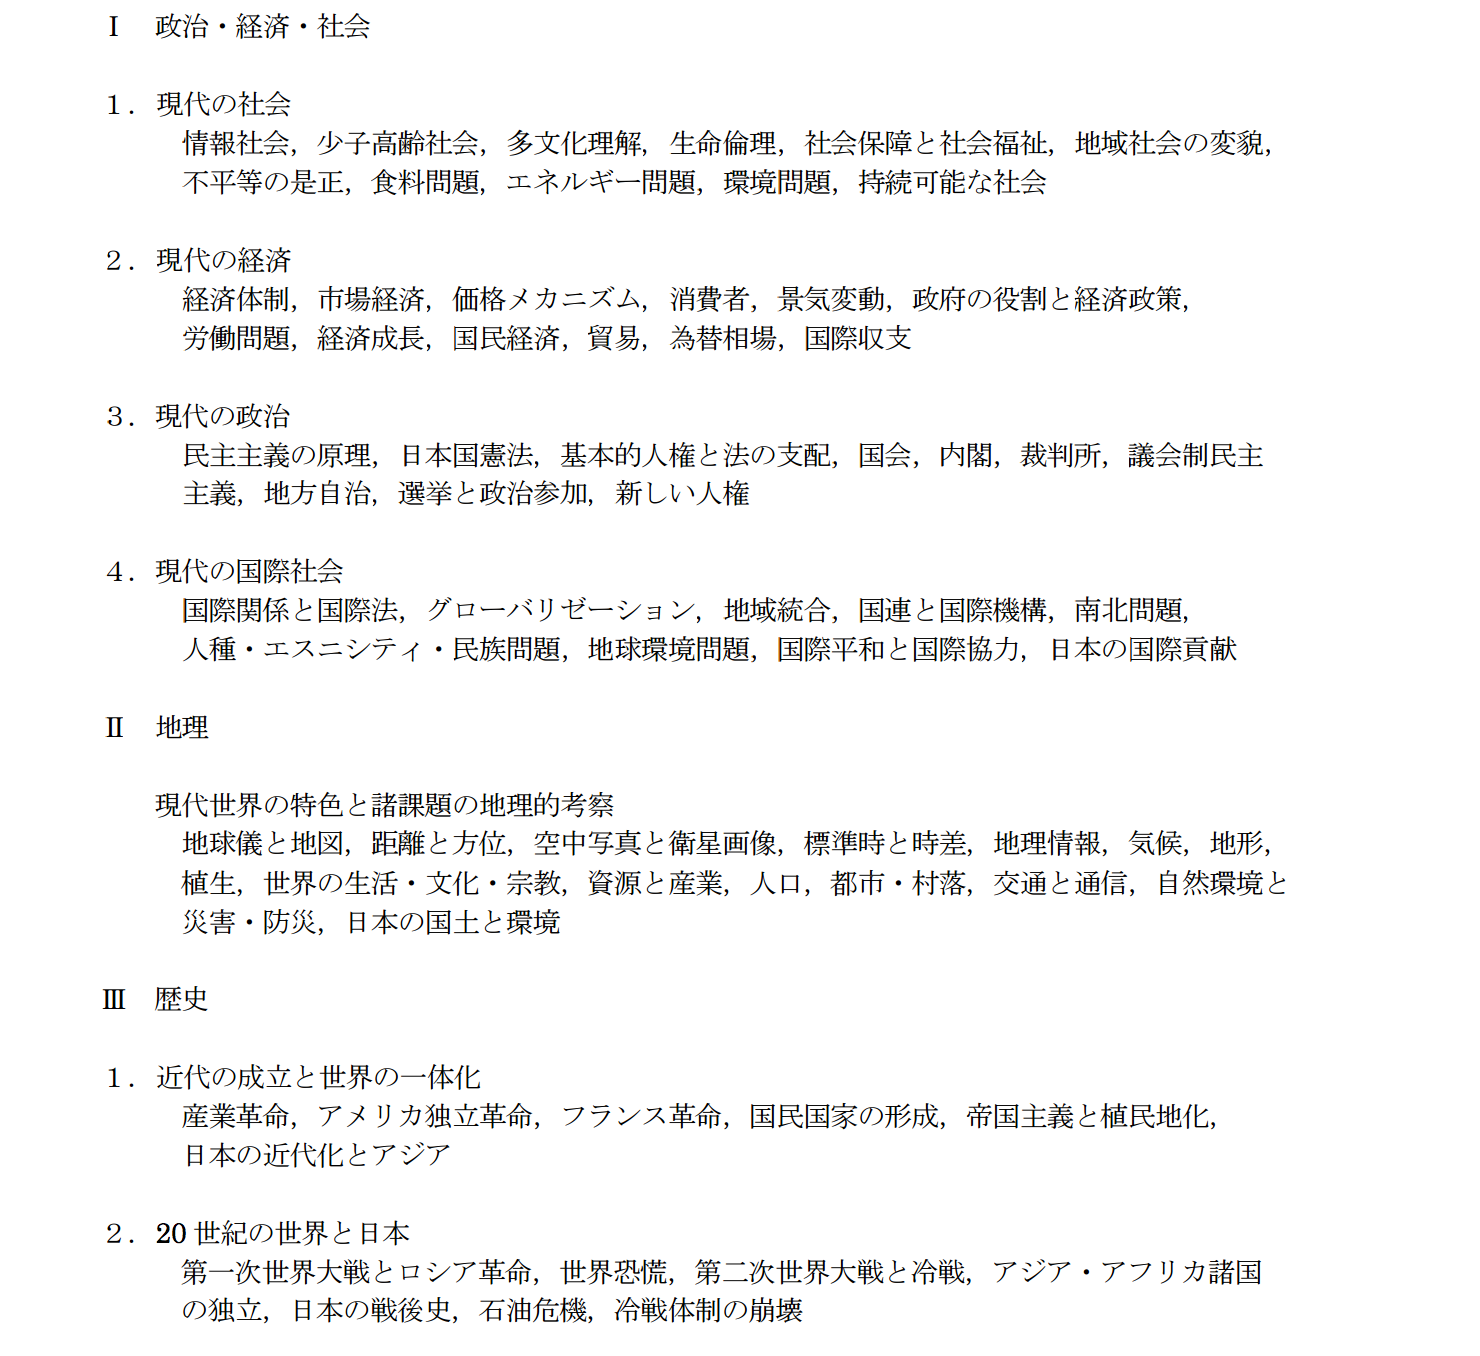 请问日本留学生考试(EJU)文科综合科和数学考